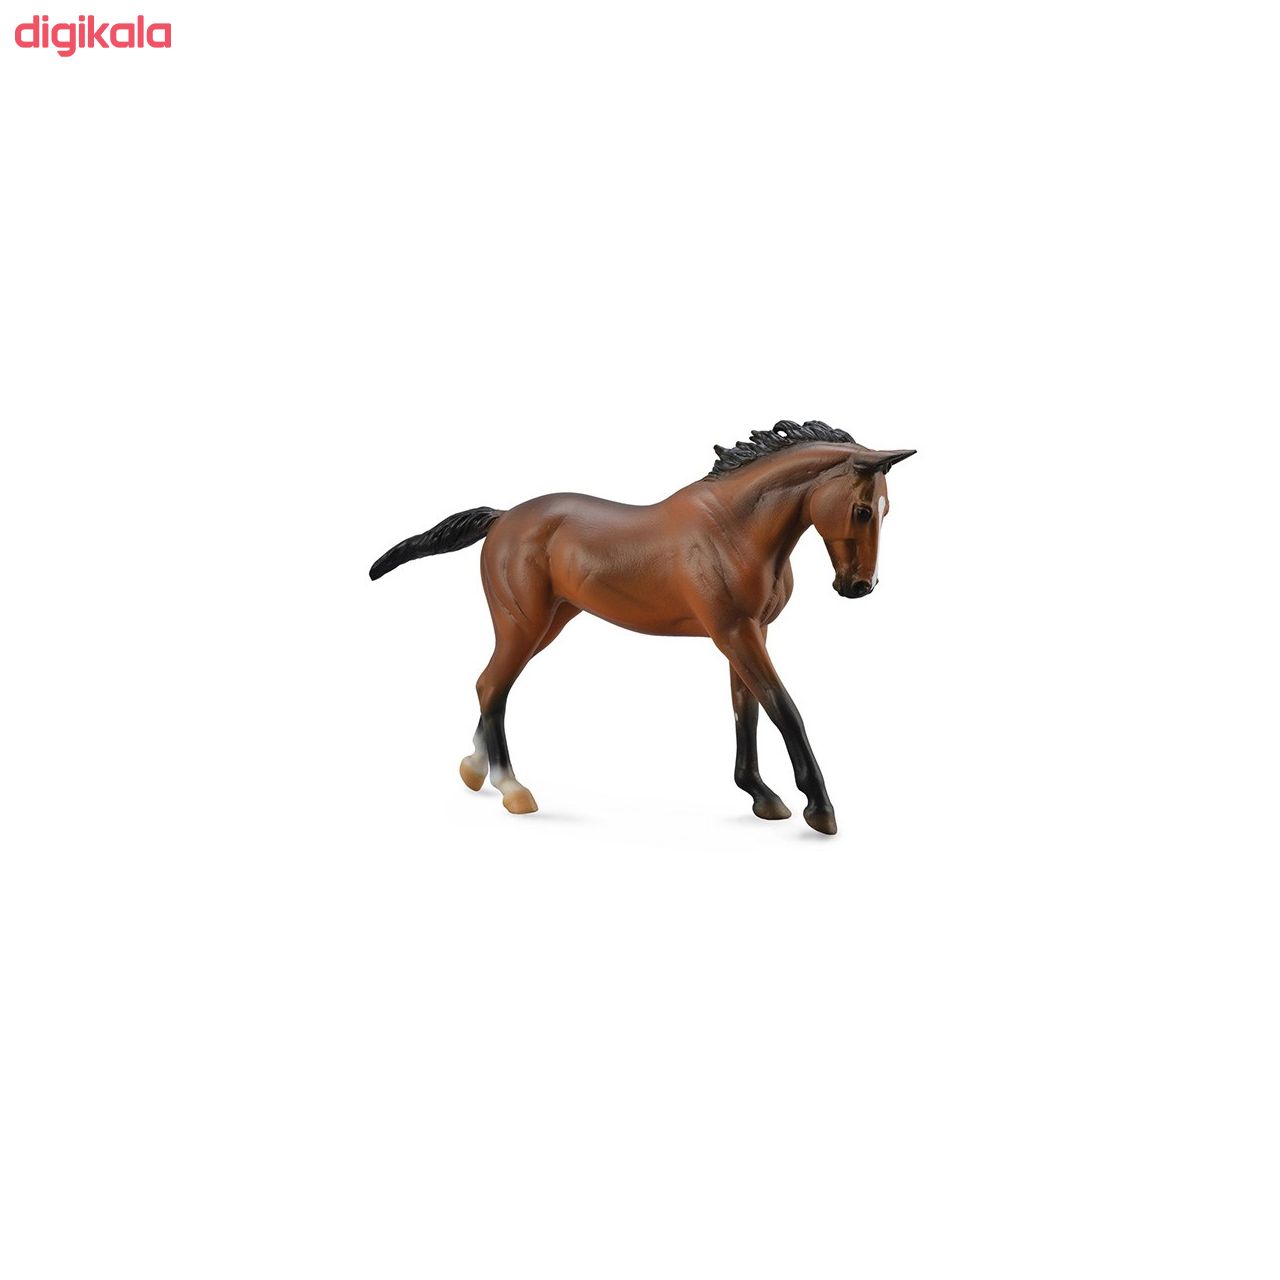  خرید اینترنتی با تخفیف ویژه عروسک کالکتا  مدل Horse 89578 طول 28 سانتی متر